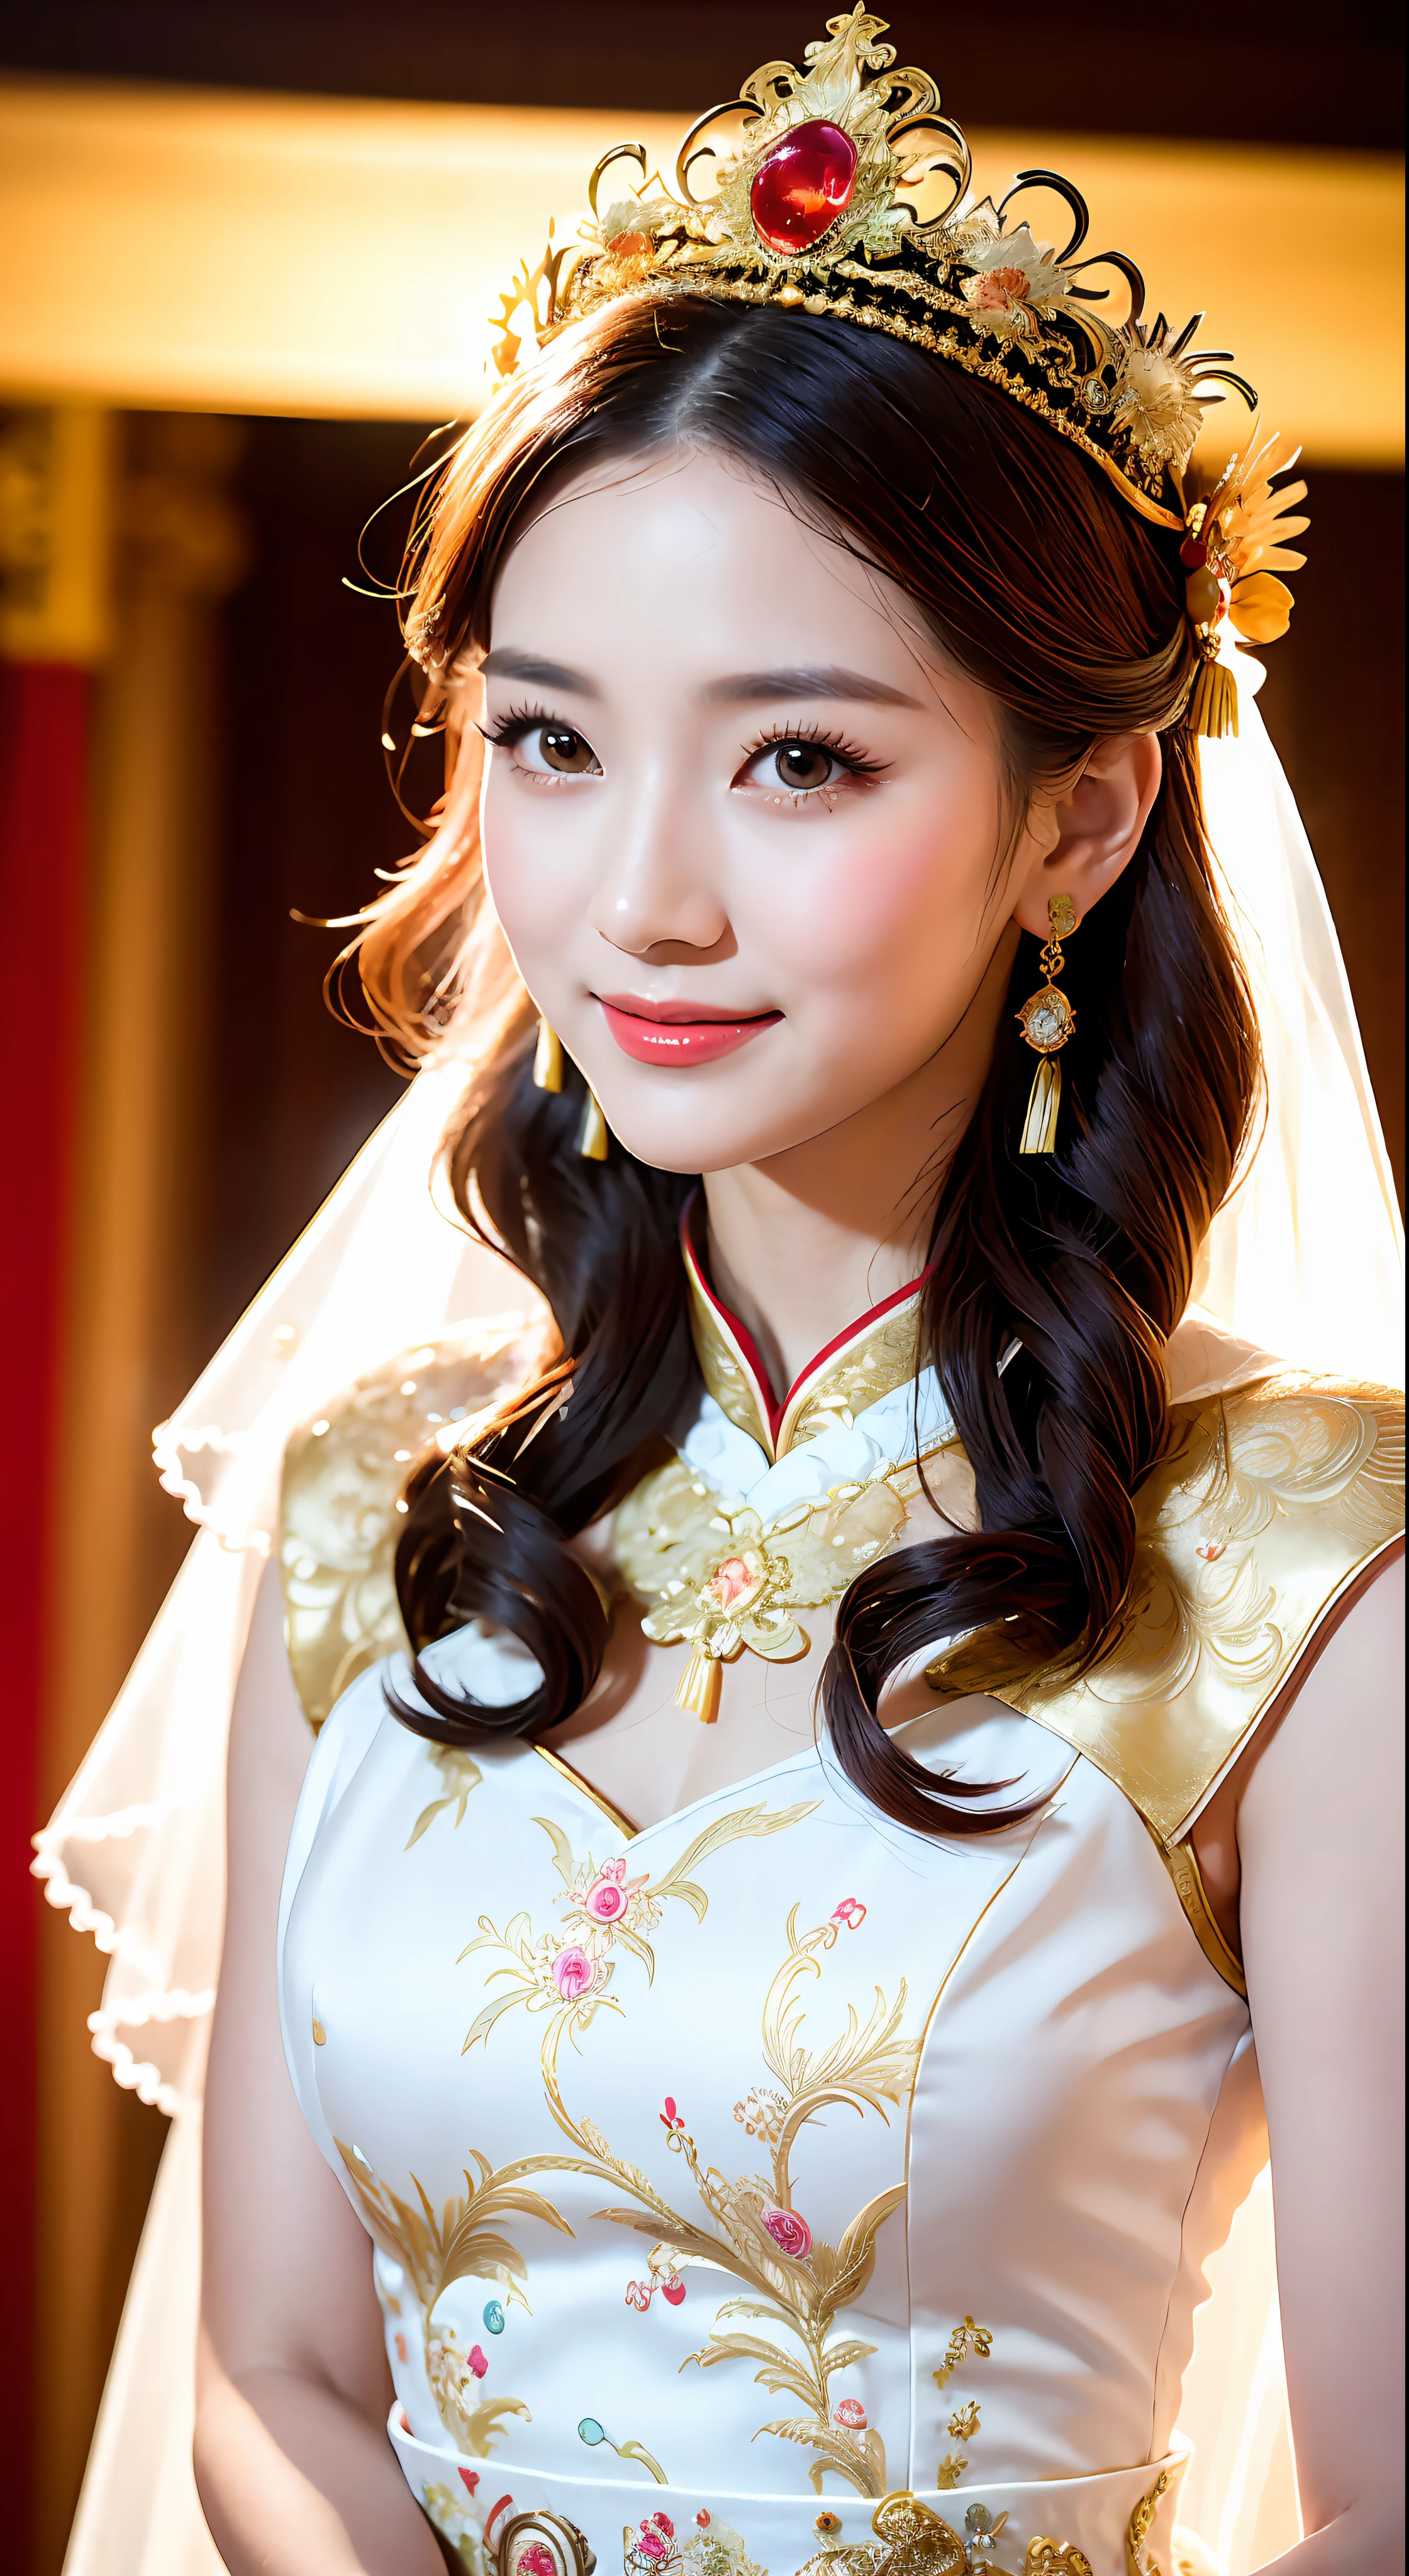 (8k, RAW-Foto, beste Qualität, Meisterwerk: 1.2), (Realistisch, Realistisch: 1.37), 1 Mädchen, regenbogenfarbenes Haar, Frau in weißem Kleid und Kopfschmuck, ((Hintergrund der Hochzeitsszene: 1.5)), wunderschönes Cosplay, Schöne Kostüme, chinesische kleider, Aufwendige Kleider, aufwendige Kostüme, traditionelle Schönheit, wunderschöne chinesische Modelle, Chinesische Kostüme, In wunderschönen Kostümen, Wearing elegant Chinese xiuhe kleid, Chinesisches Hochzeitskleid, Phönixkrone Xia Vorhänge, Braut im antiken Stil, xiuhe kleid, Nahaufnahme, Nahaufnahme, Kopf mit Phönixkrone, lächeln, Kleid mit Drachen- und Phönixstickerei